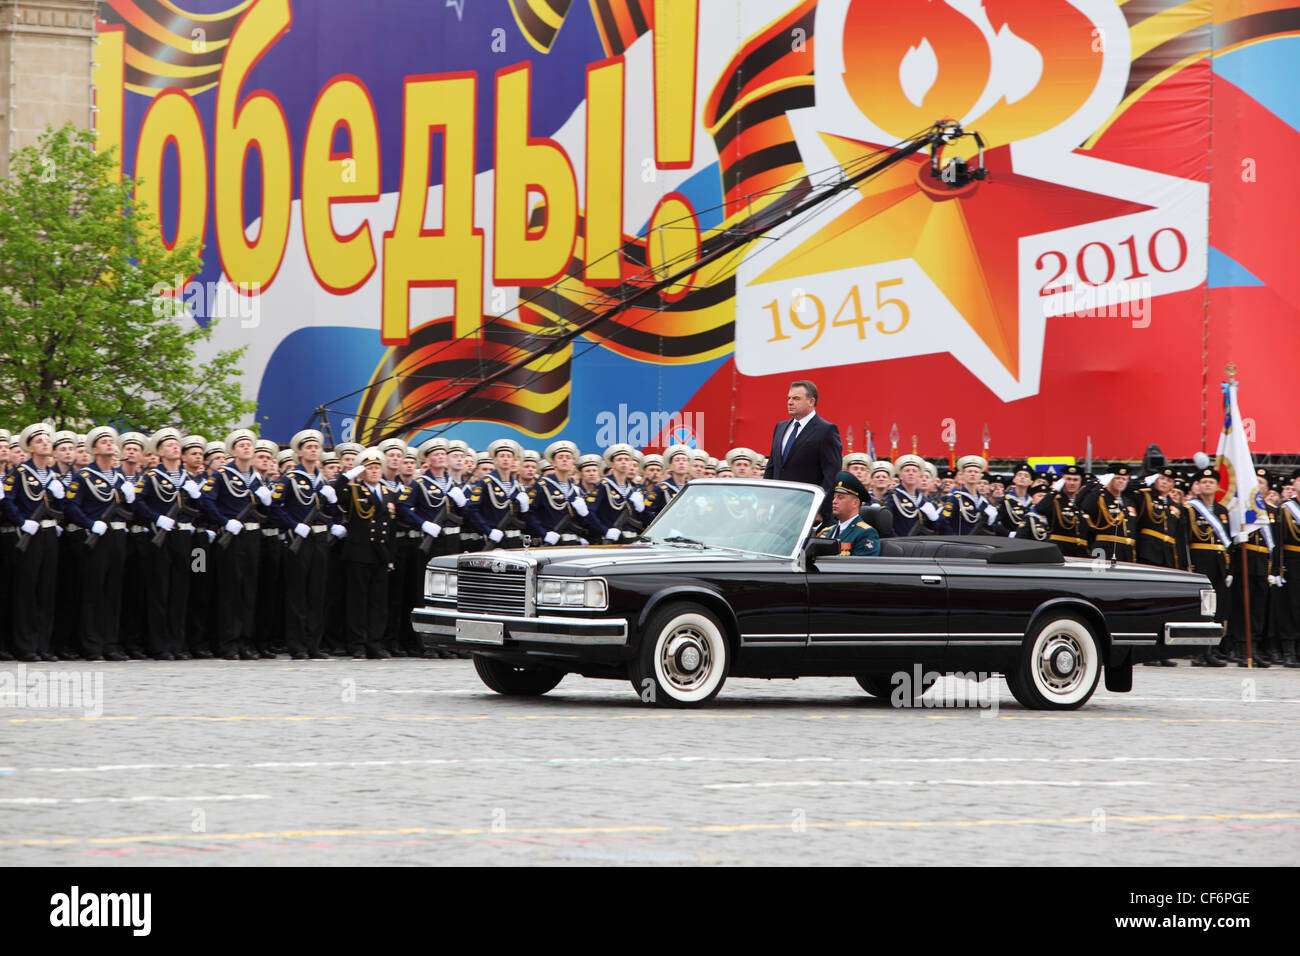 Mosca 6 maggio il ministro della difesa Serdyukov Anatoliy sorge auto nei pressi di soldati parata prove onore Grande Guerra Patriottica vittoria Foto Stock